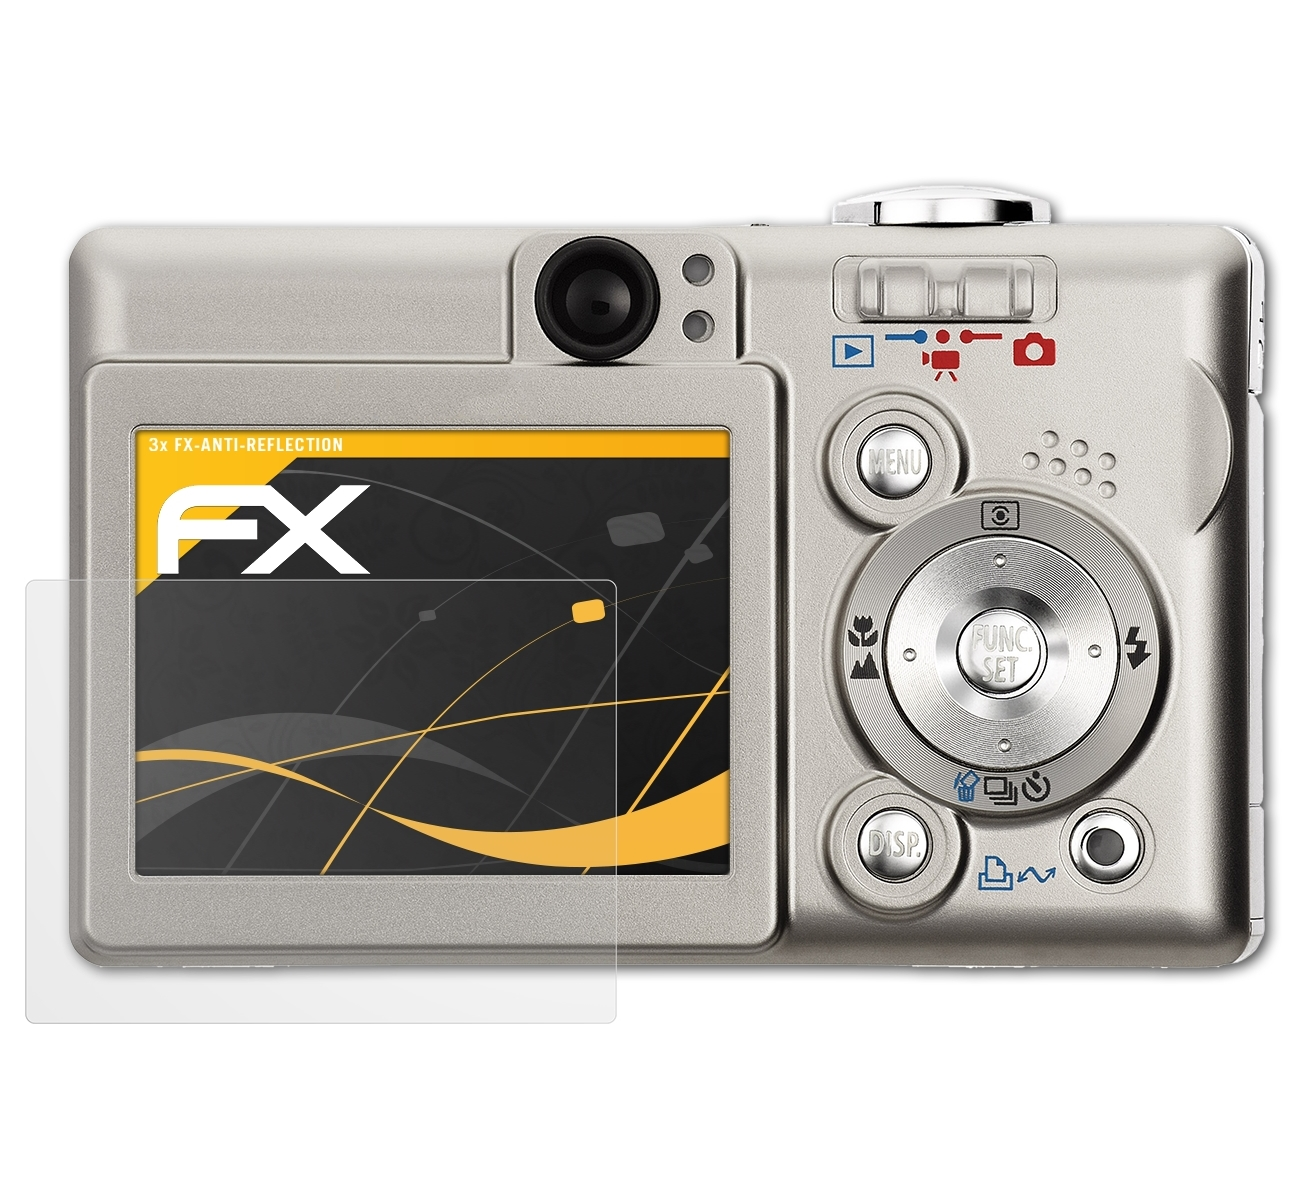 Displayschutz(für 3x Canon 40) ATFOLIX FX-Antireflex Digital IXUS